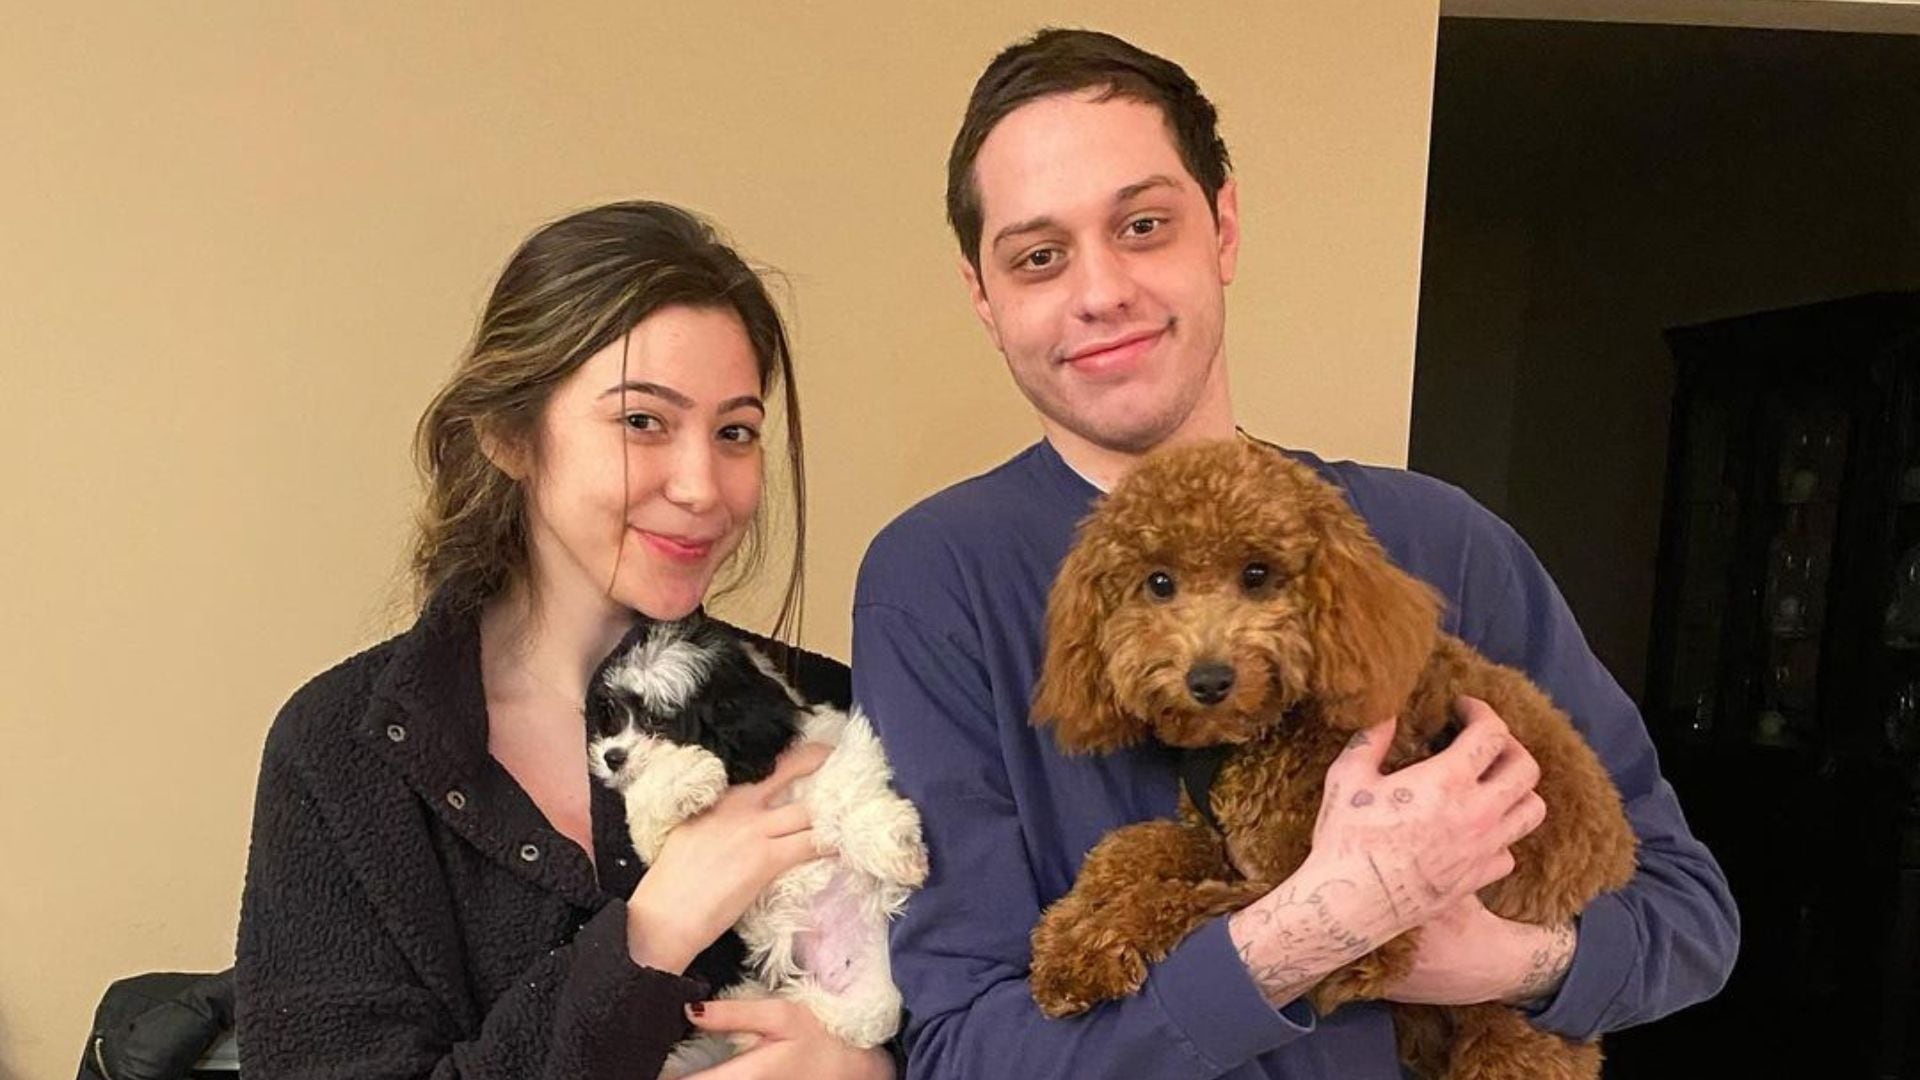 Pete Davidson compartió en mayo que su perro Henry había fallecido, y tras su luto, decidió comprar un nuevo perro. Esto causó la indignación de sus seguidores y de PETA
Foto: Instagram/davesirus